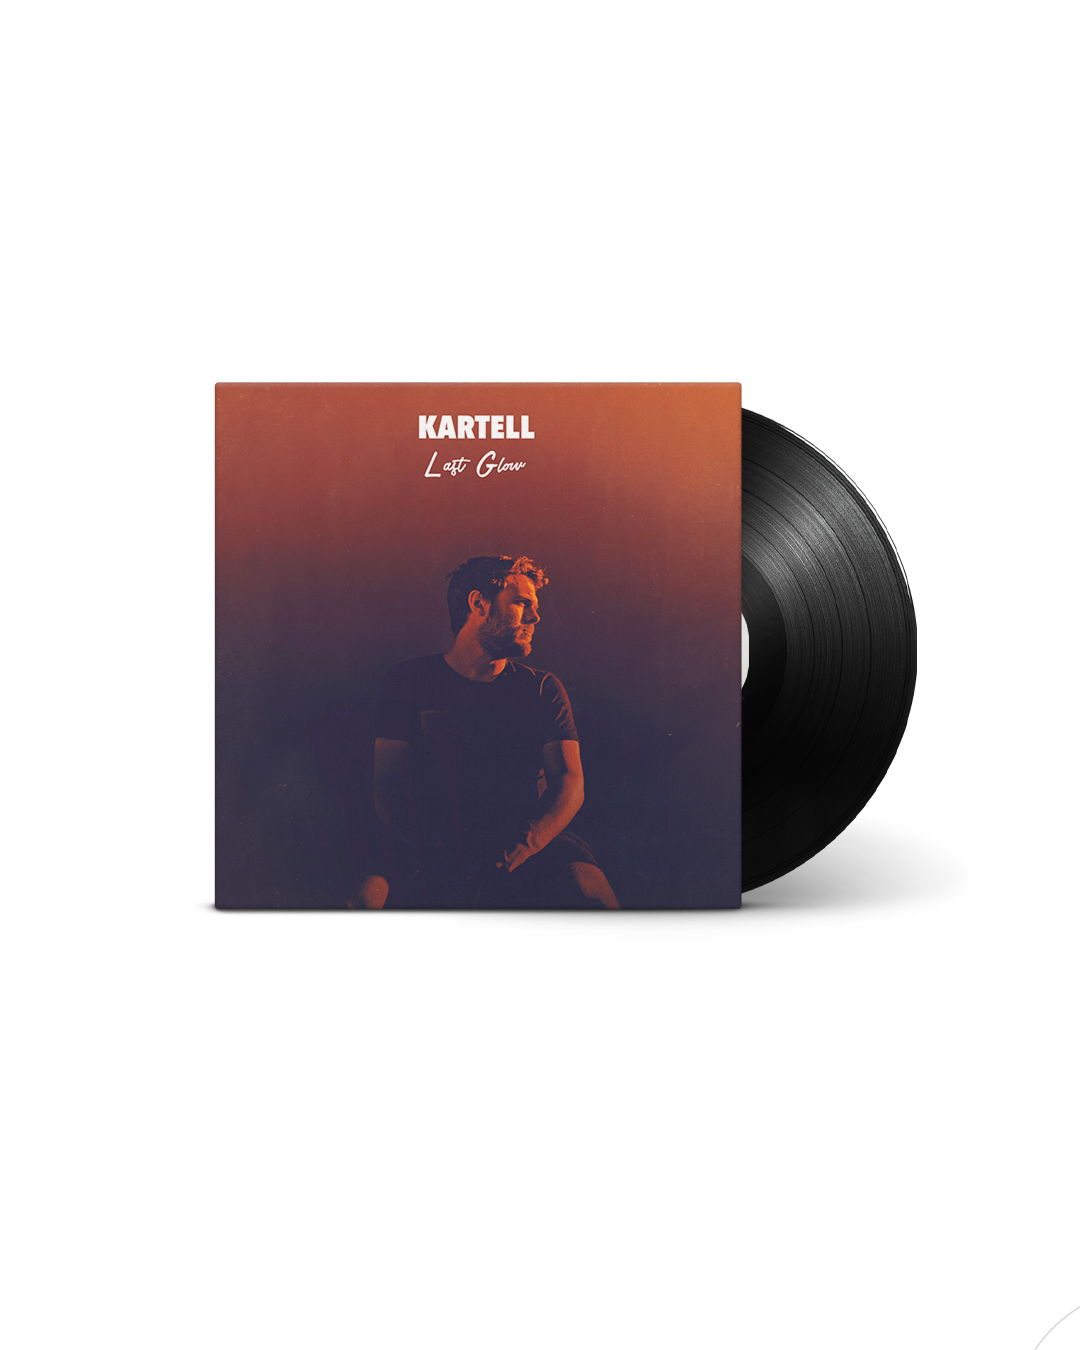 KARTELL – LAST GLOW – VINYL 12″ EP